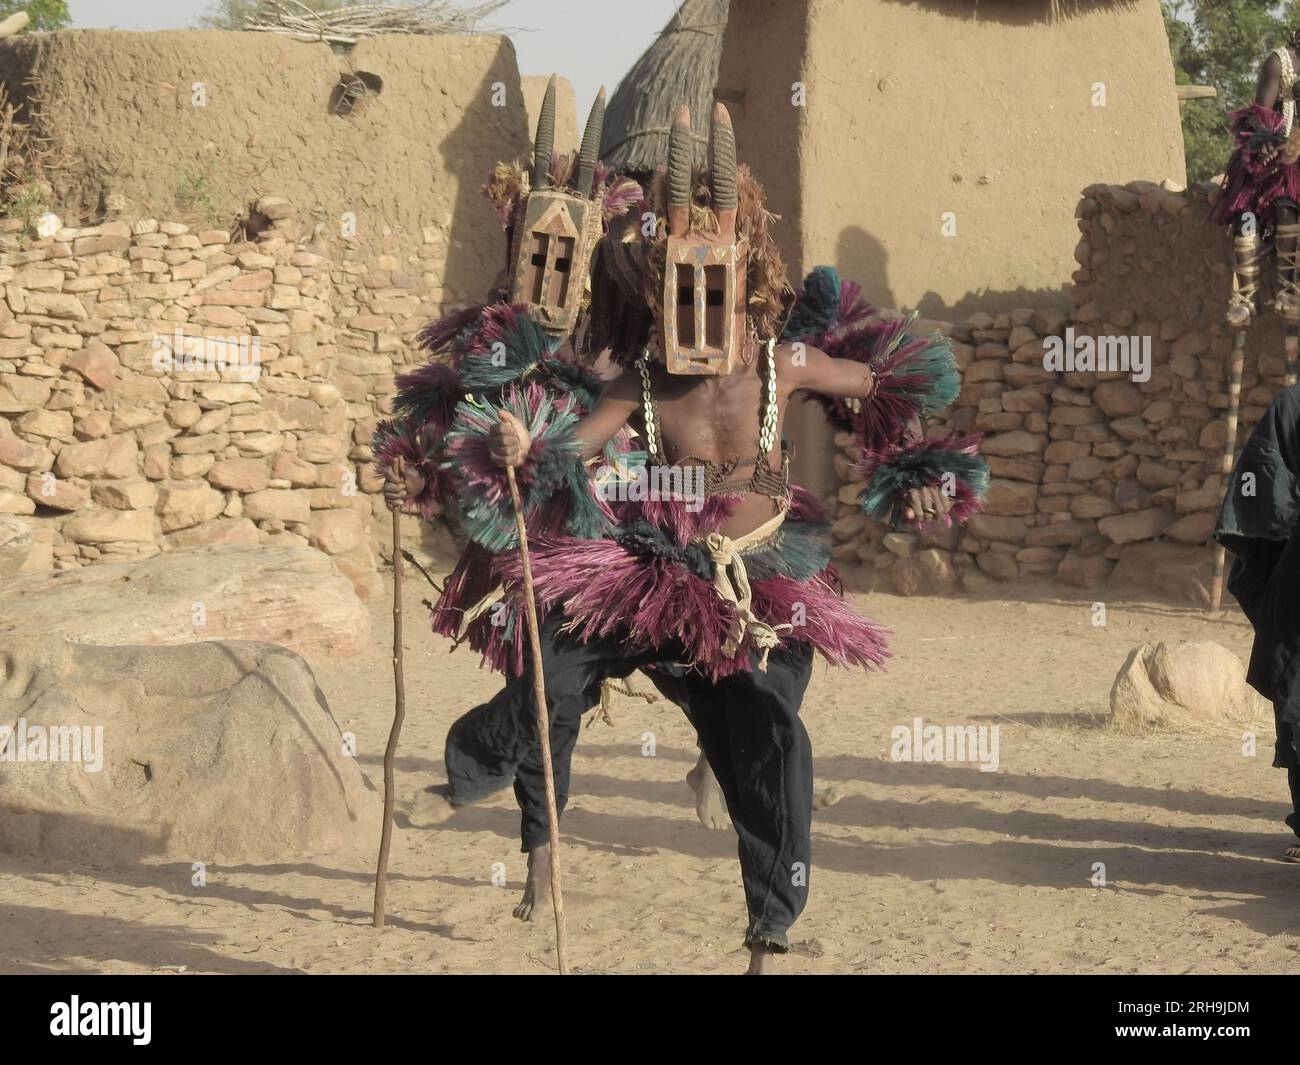 Danse traditionnelle des Dogons. Les africains masqués dansent une danse traditionnelle dans une tribu, Tirelli, pays Dogon, Mali. danse masque Banque D'Images